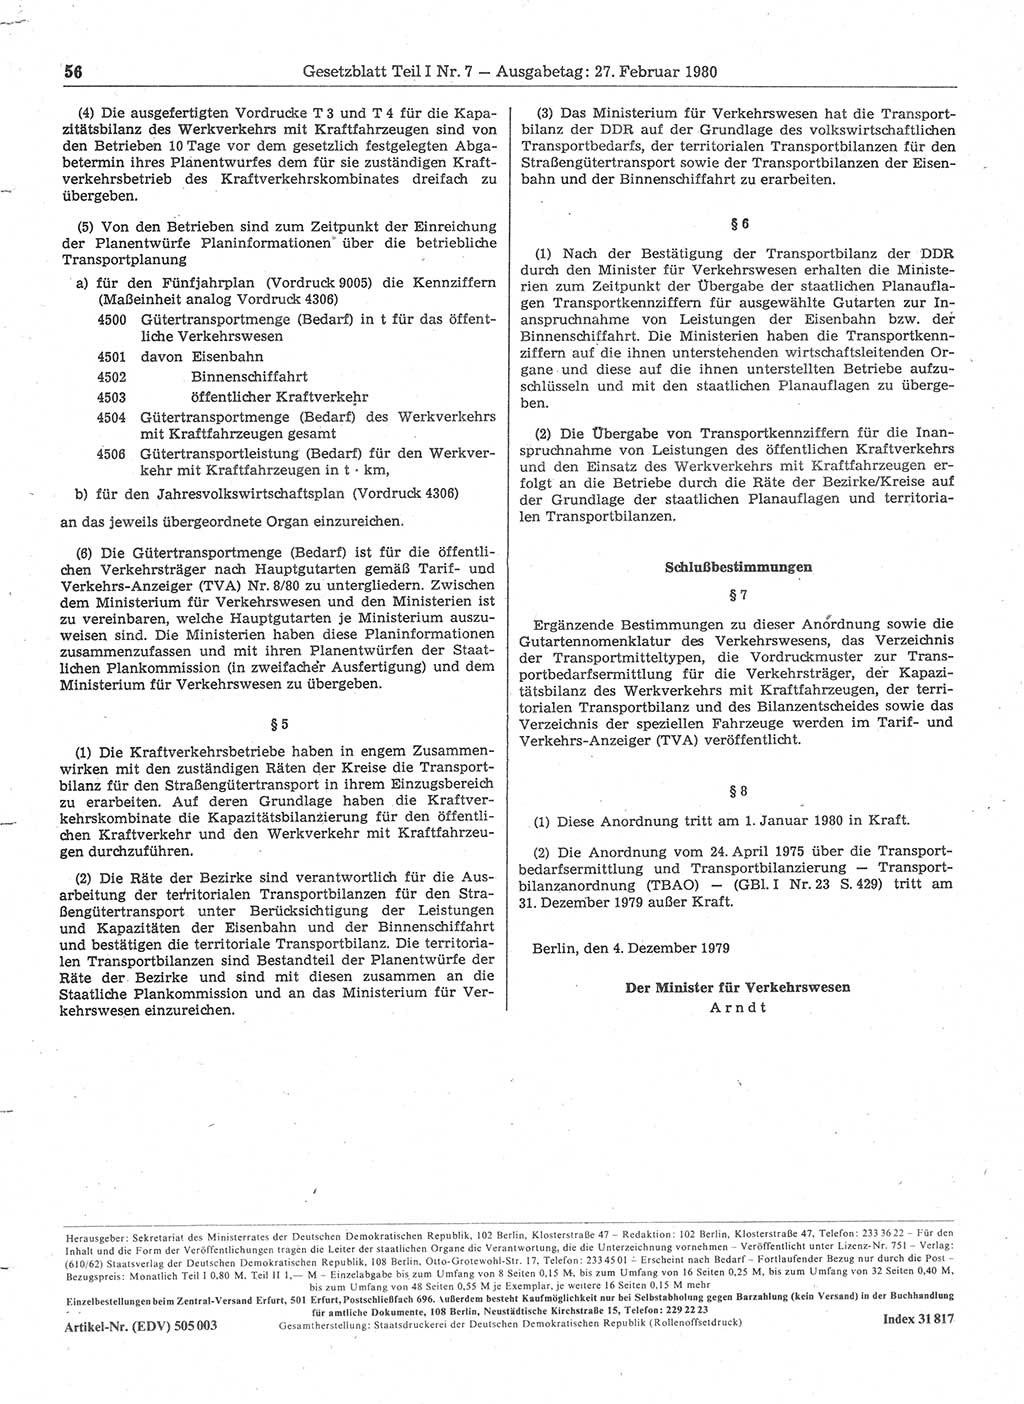 Gesetzblatt (GBl.) der Deutschen Demokratischen Republik (DDR) Teil Ⅰ 1980, Seite 56 (GBl. DDR Ⅰ 1980, S. 56)